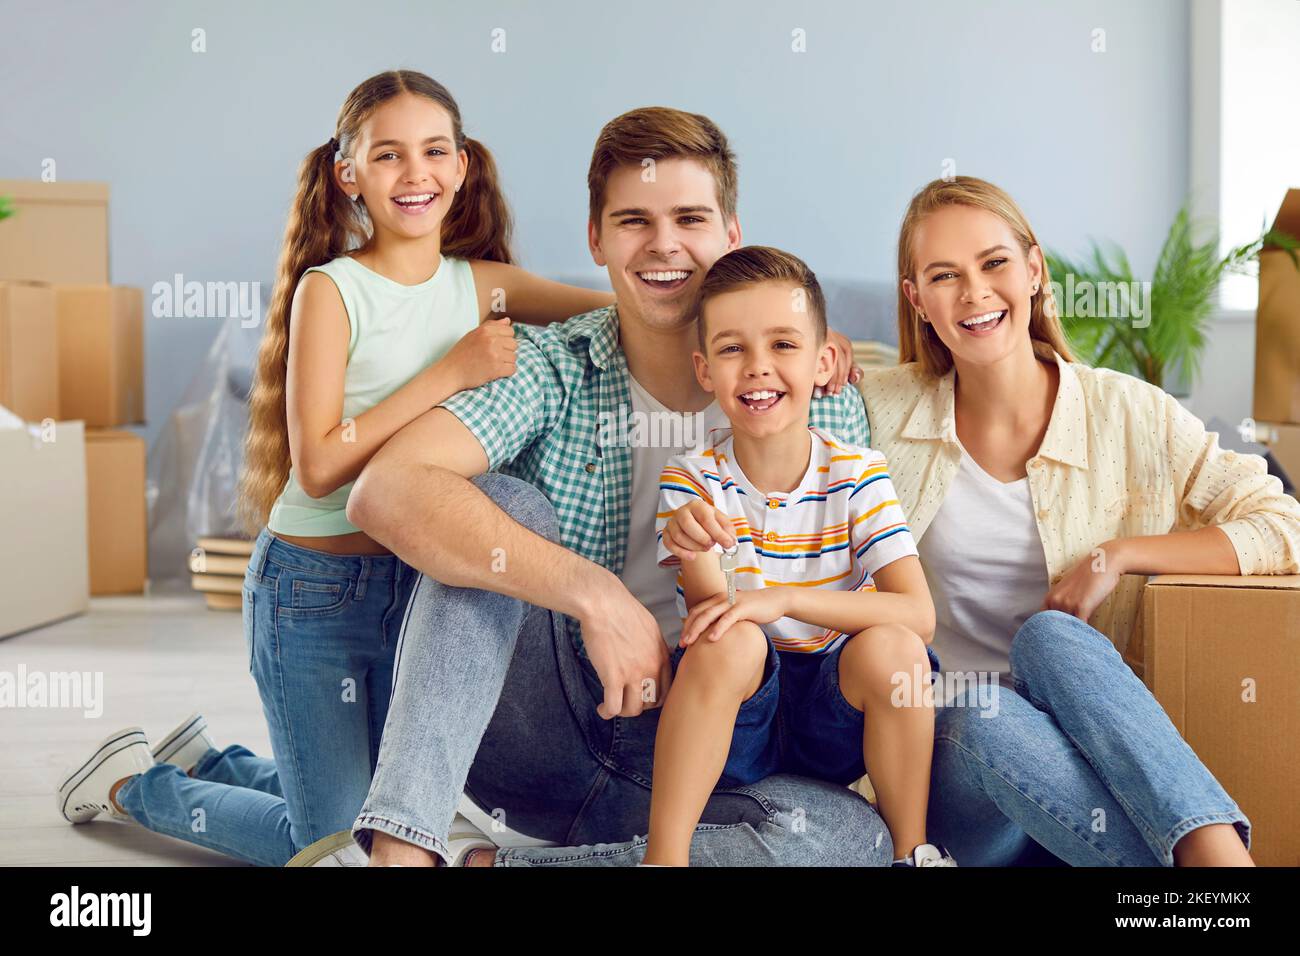 Porträt einer glücklichen jungen modernen Familie mit Kindern, die in ihr eigenes neues Haus ziehen. Stockfoto